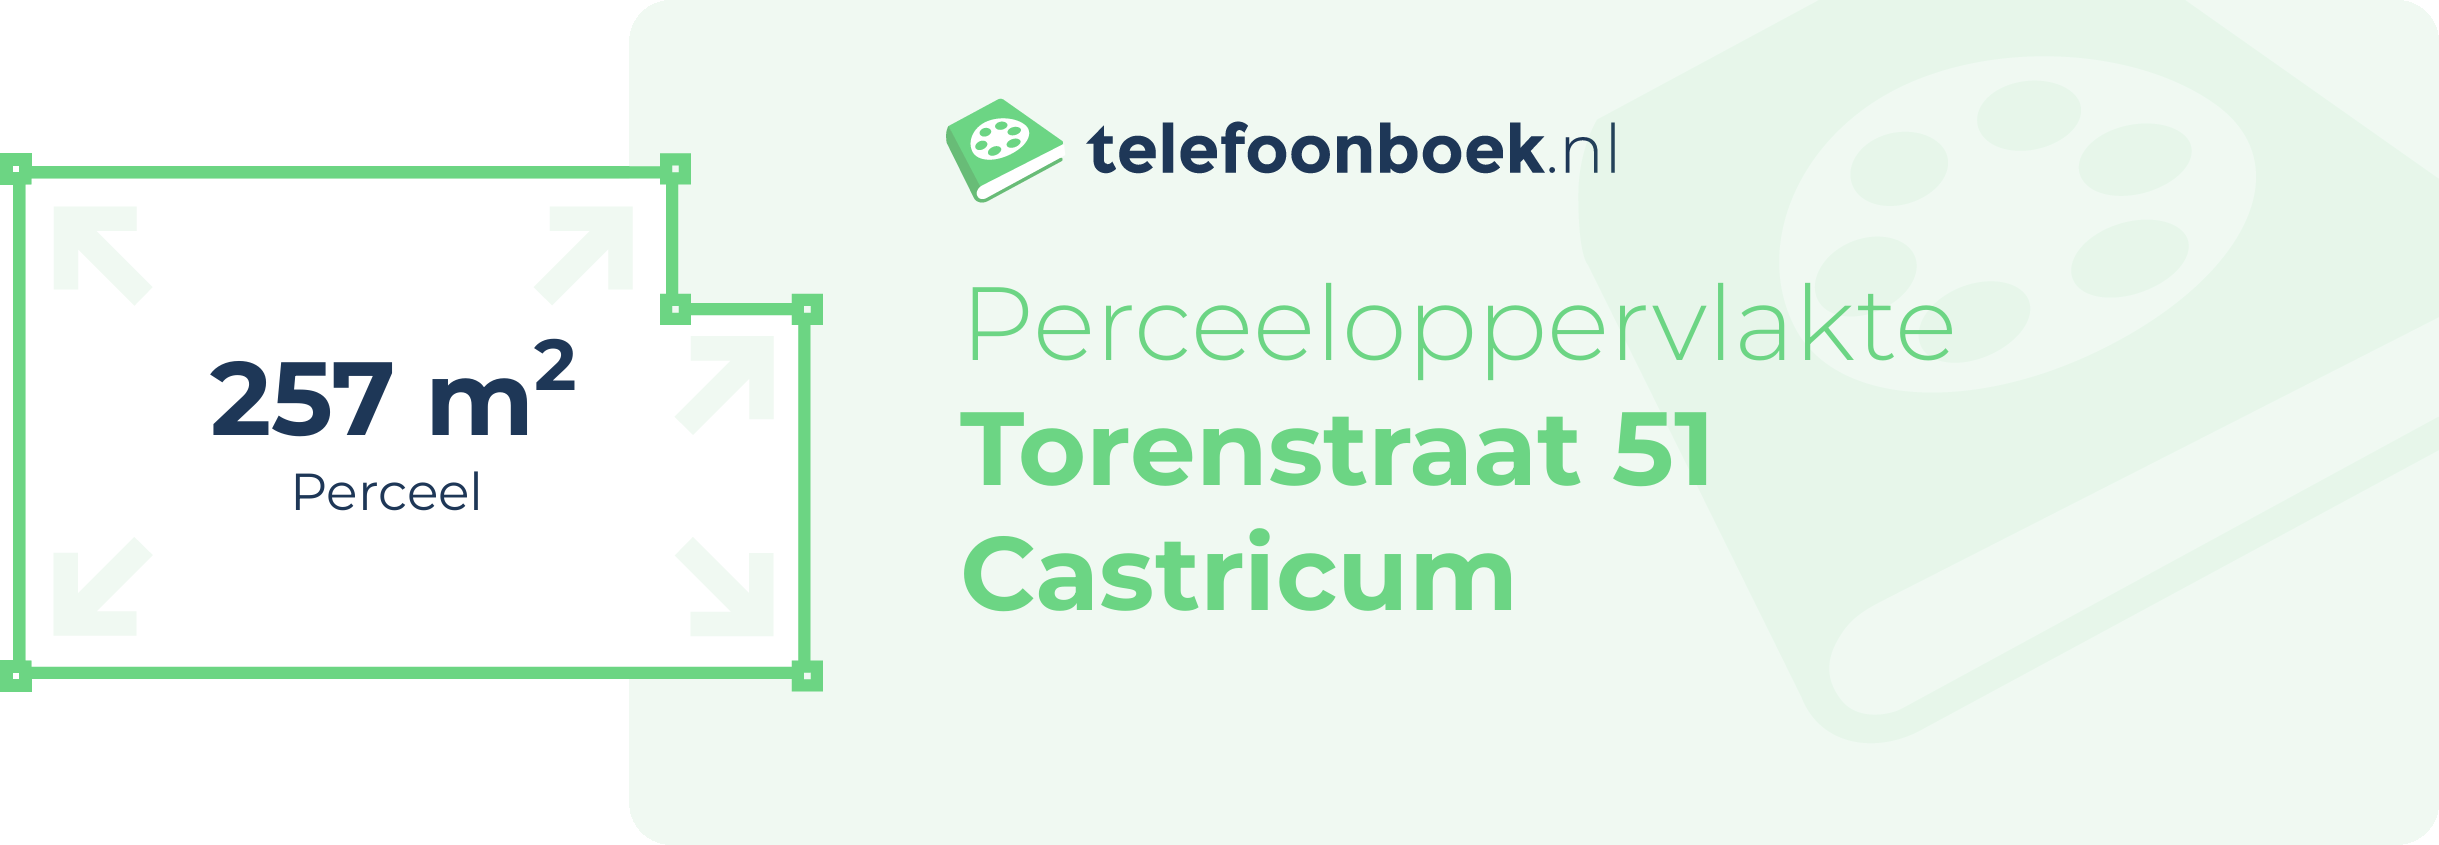 Perceeloppervlakte Torenstraat 51 Castricum